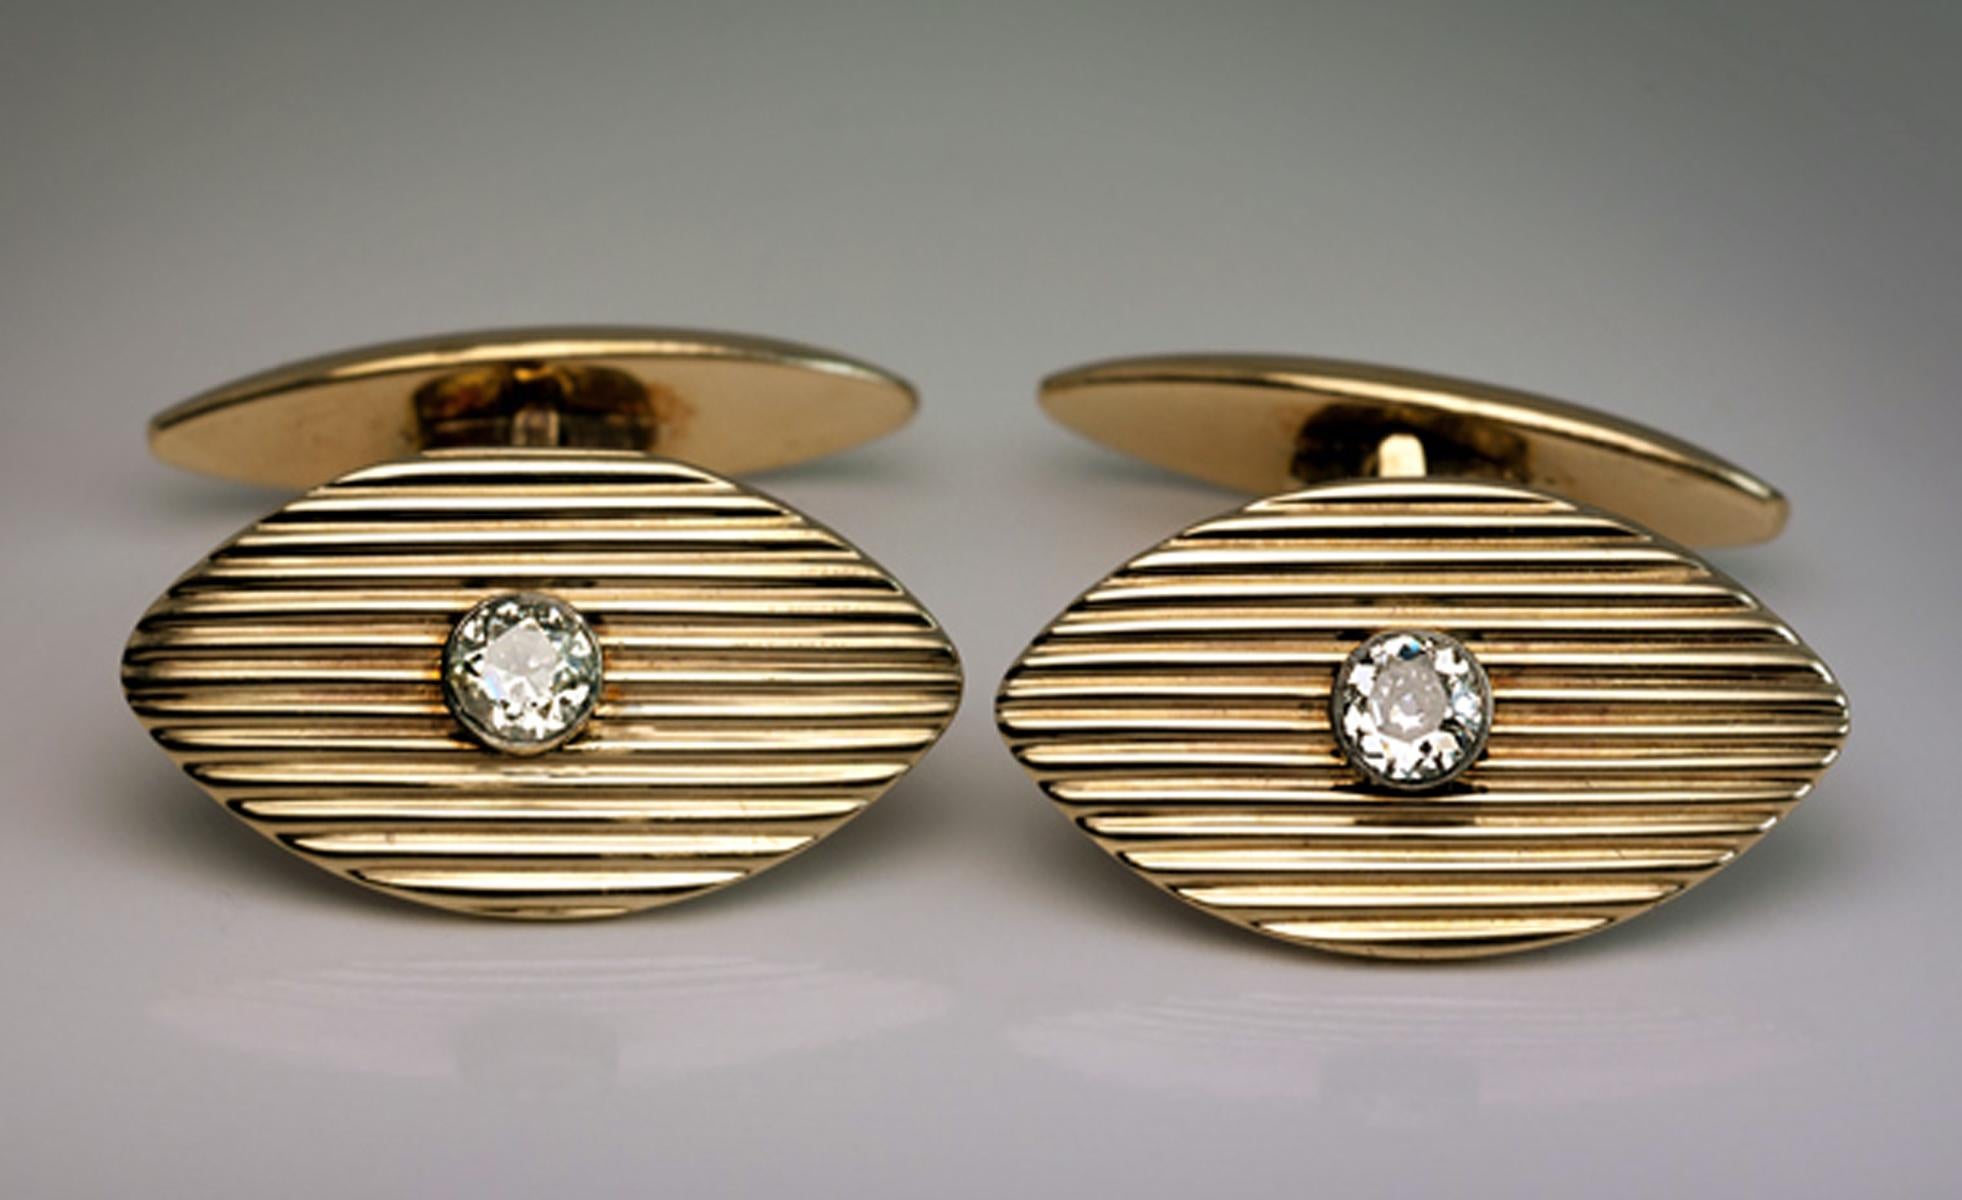 Ein Paar antiker russischer Manschettenknöpfe aus geripptem Gold und Diamanten von Joseph Marshak

Hergestellt in Kiew zwischen 1908 und 1917

Joseph Marshak (1854-1918), einer der Konkurrenten von Faberge, war ein bekannter Juwelier im